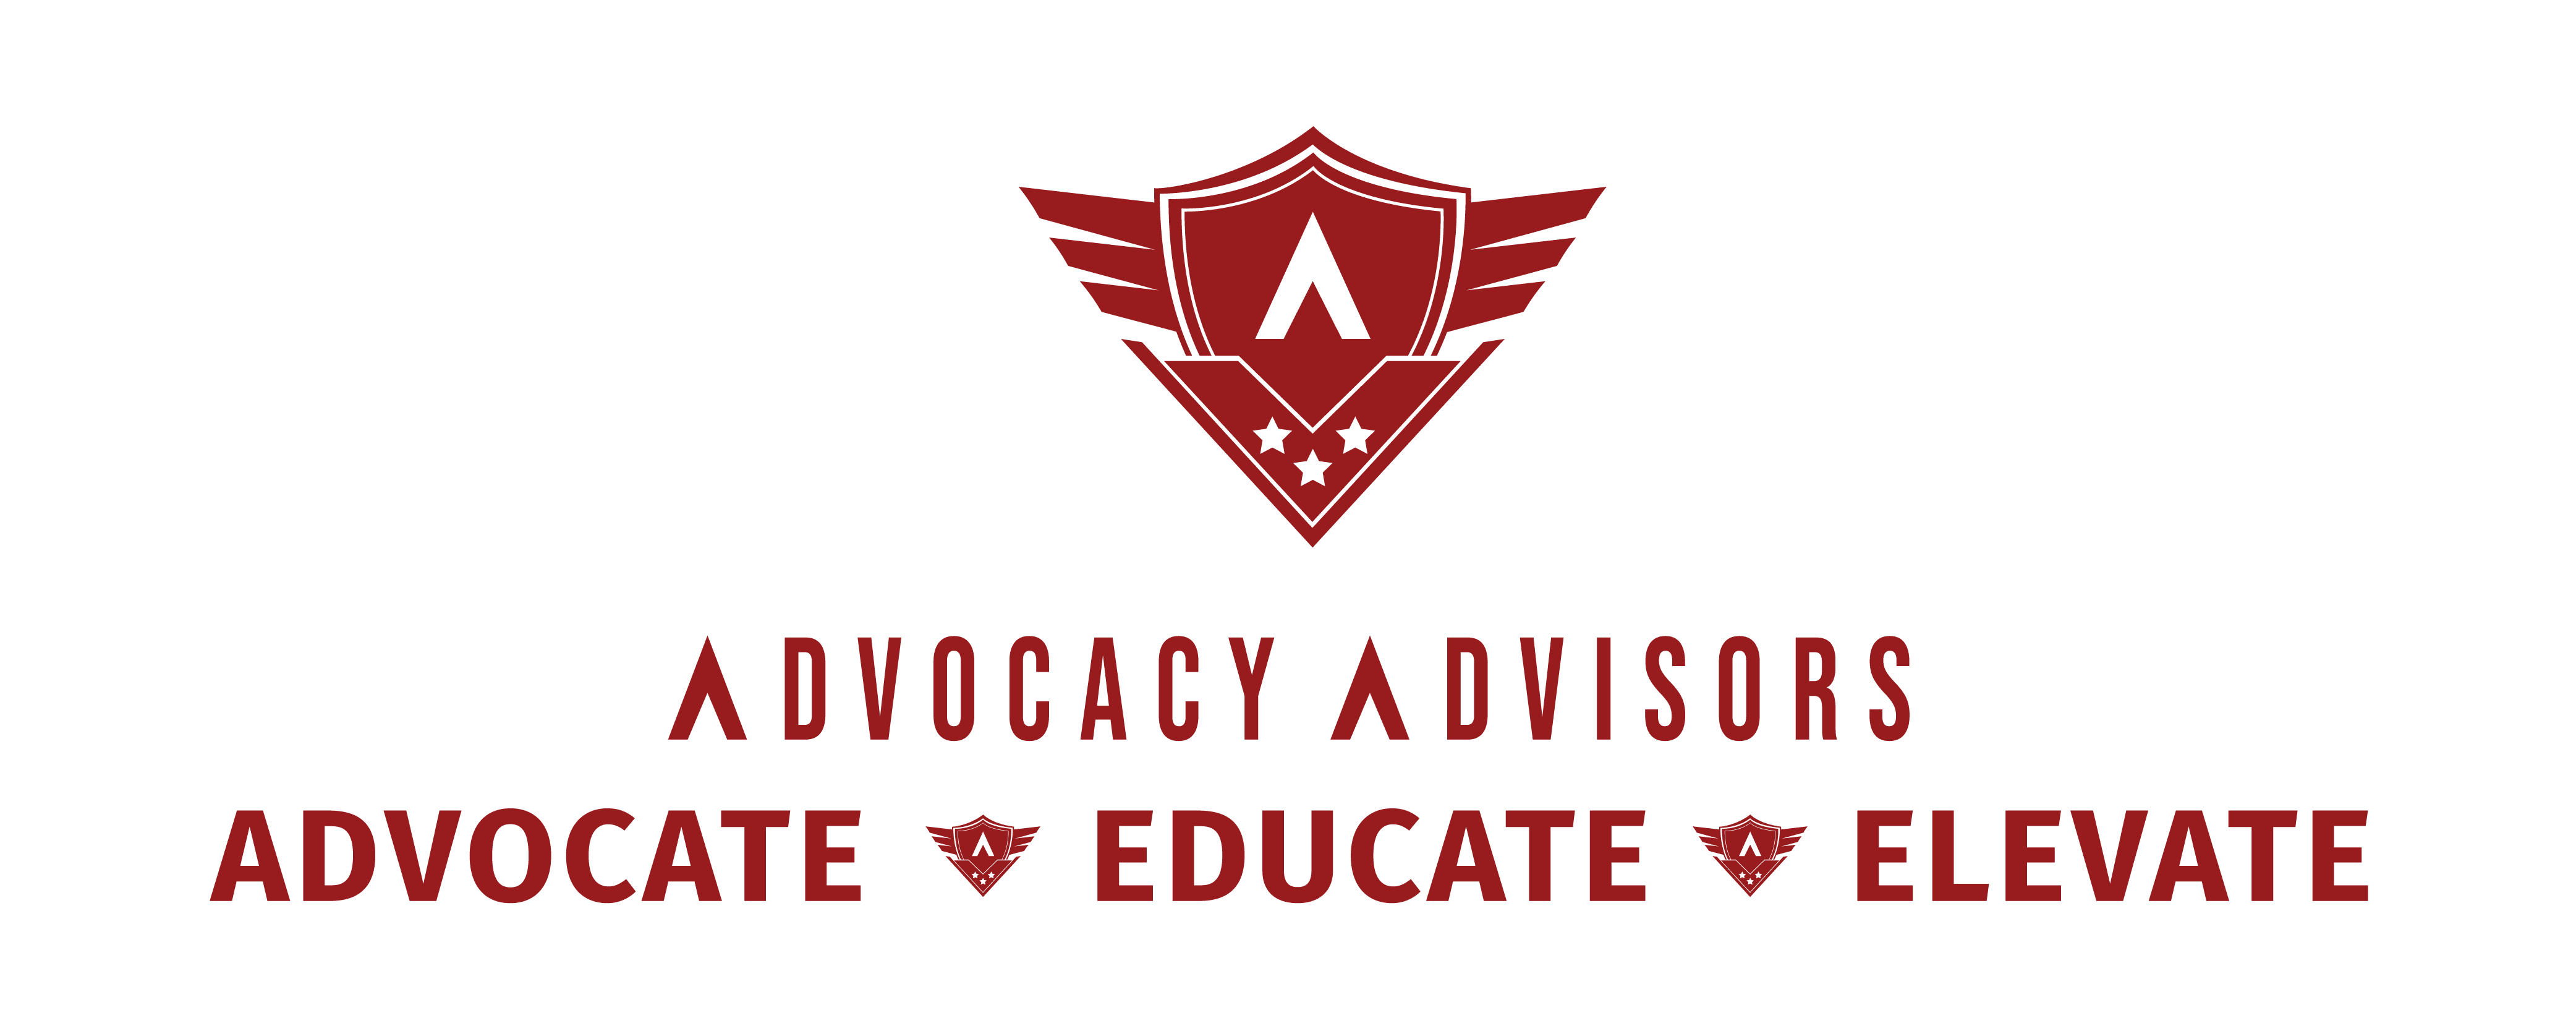 Advocacy Advisors